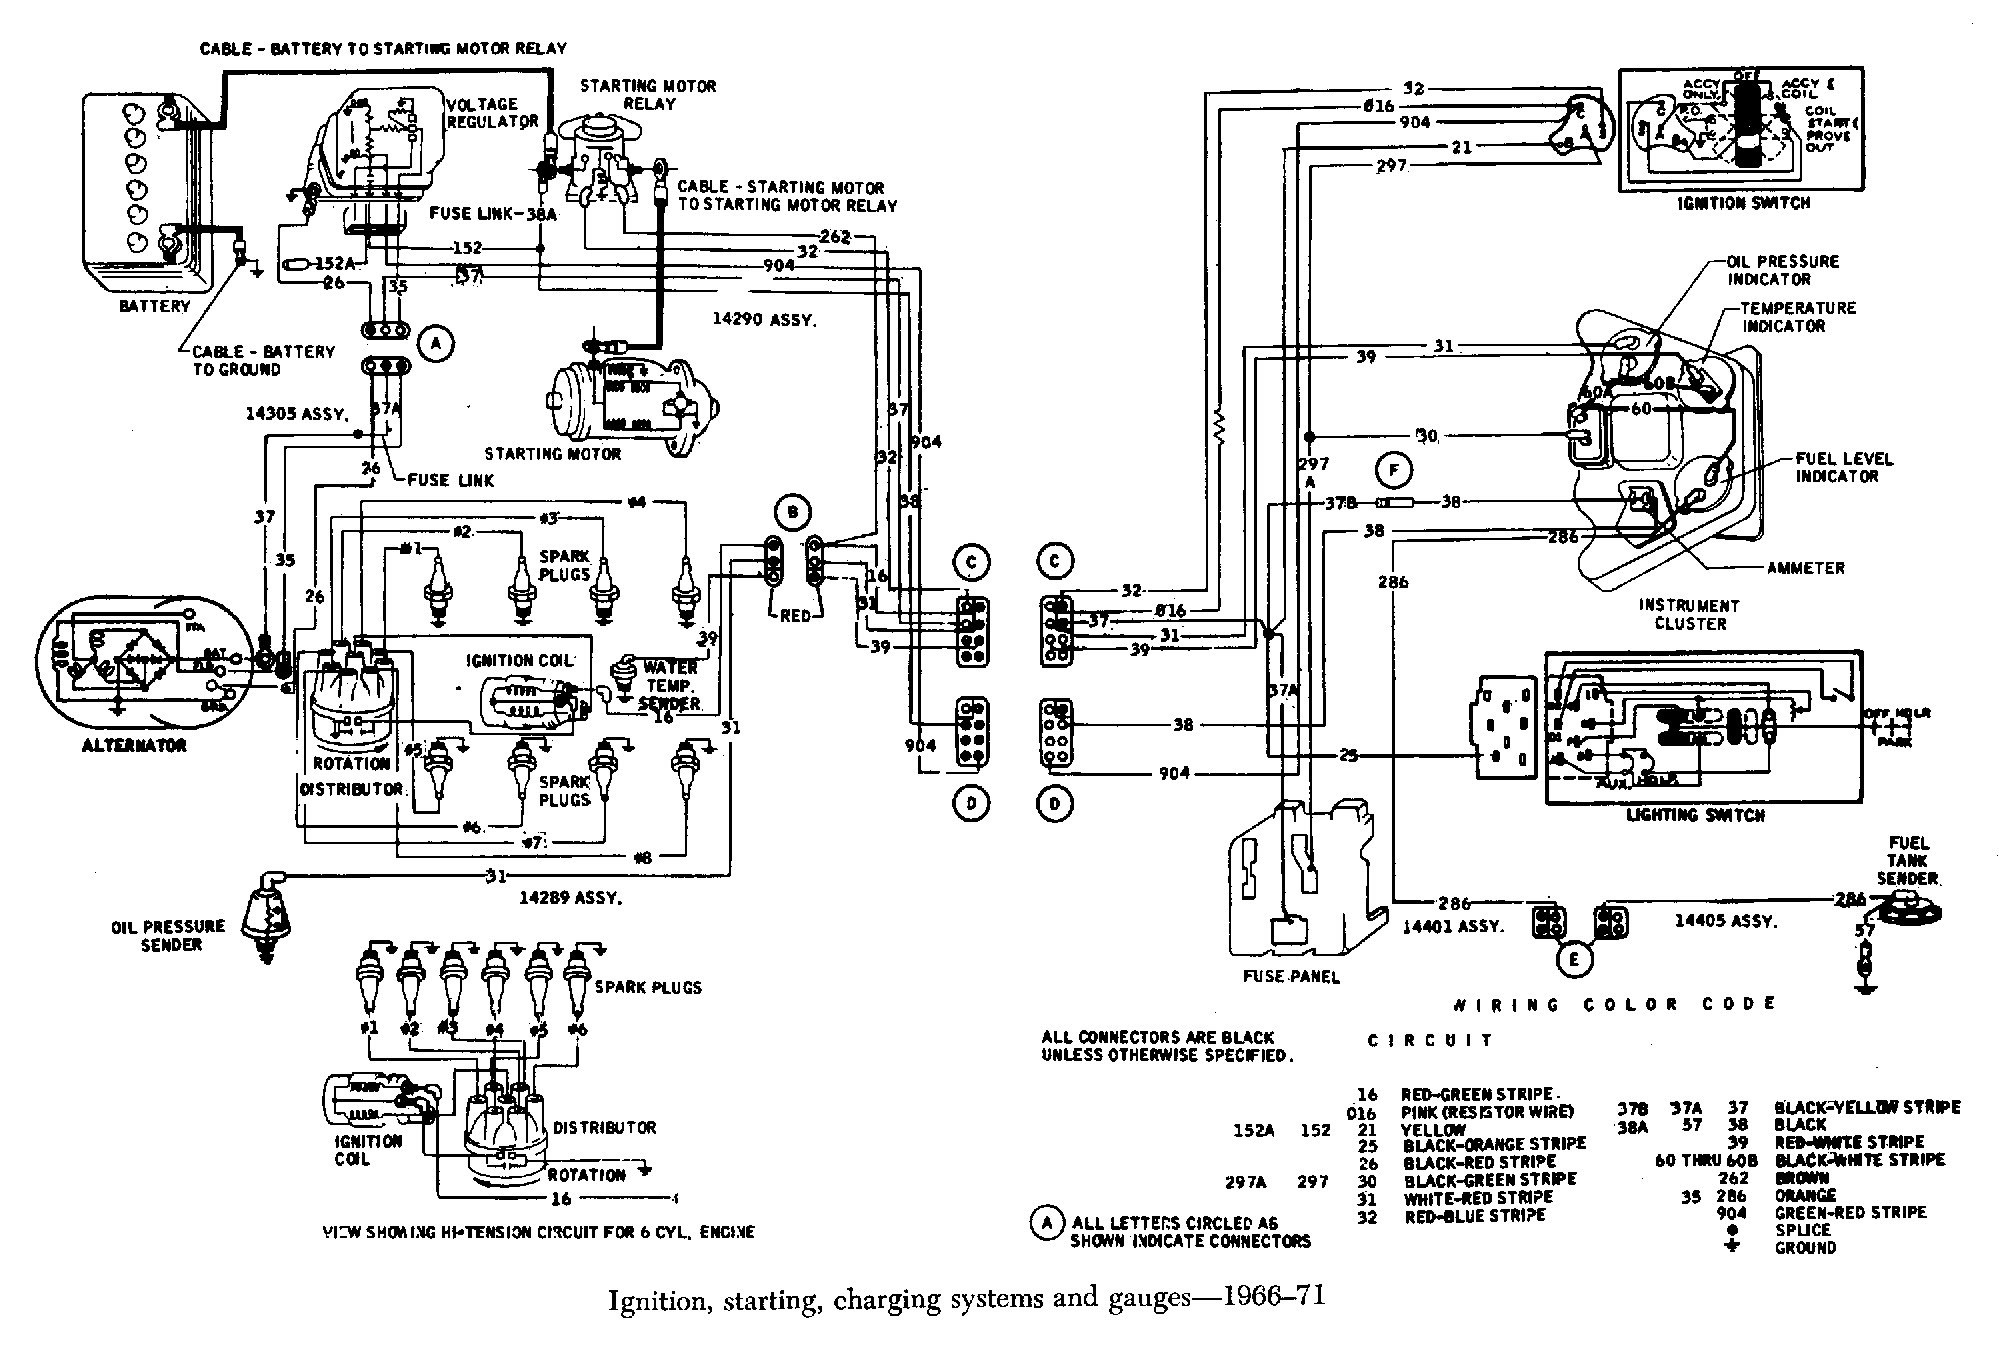 Engine Wiring Diagram 1986 Monte 305 72 Chevy C10 Engine Wiring Diagram Full Hd Version Wiring Of Engine Wiring Diagram 1986 Monte 305